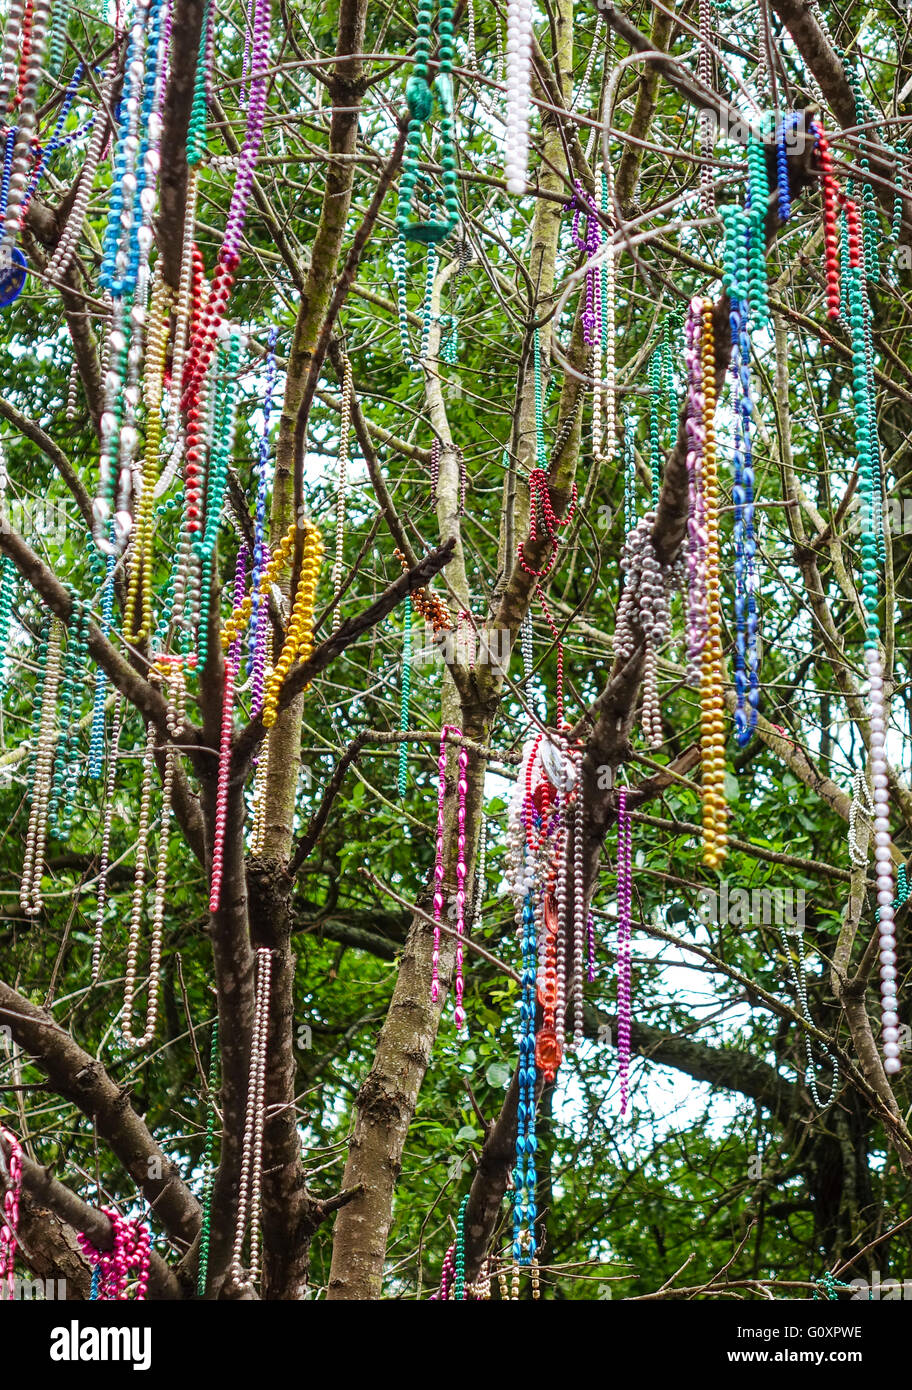 Bunte Ketten hängen in den Bäumen von New Orleans Stockfotografie - Alamy